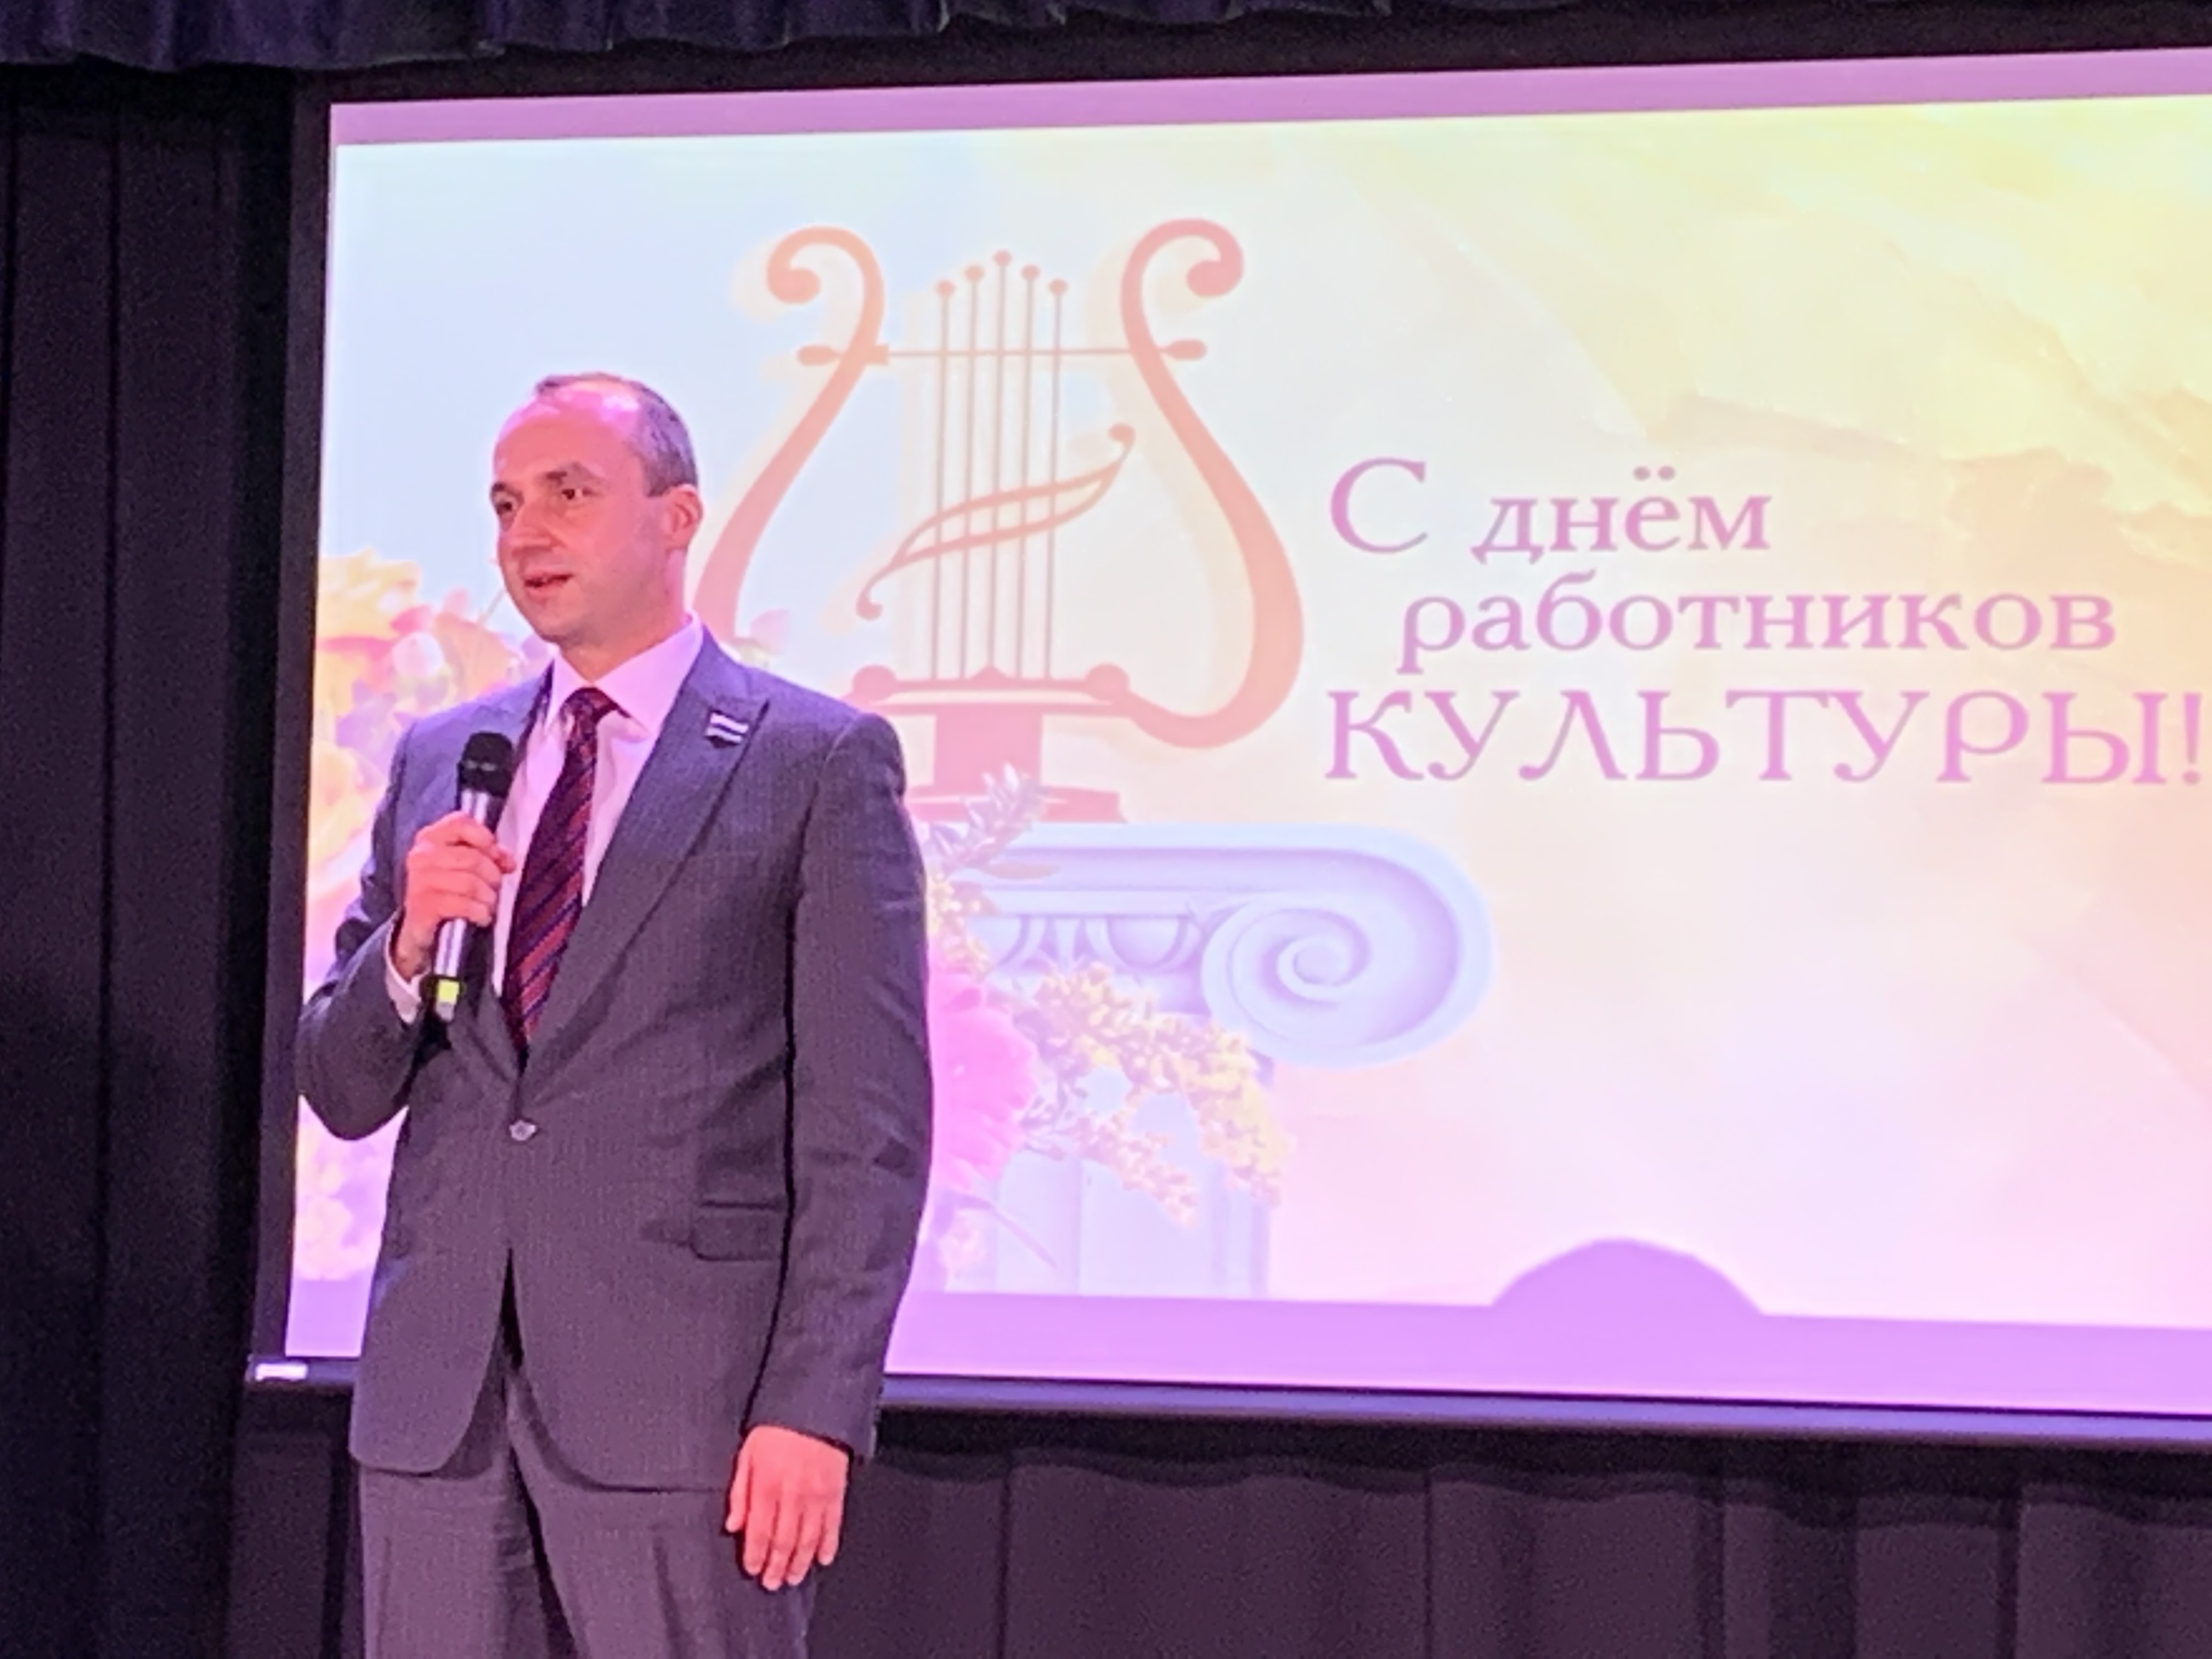 Михаил Клименко поздравил работников культуры с профессиональным праздником